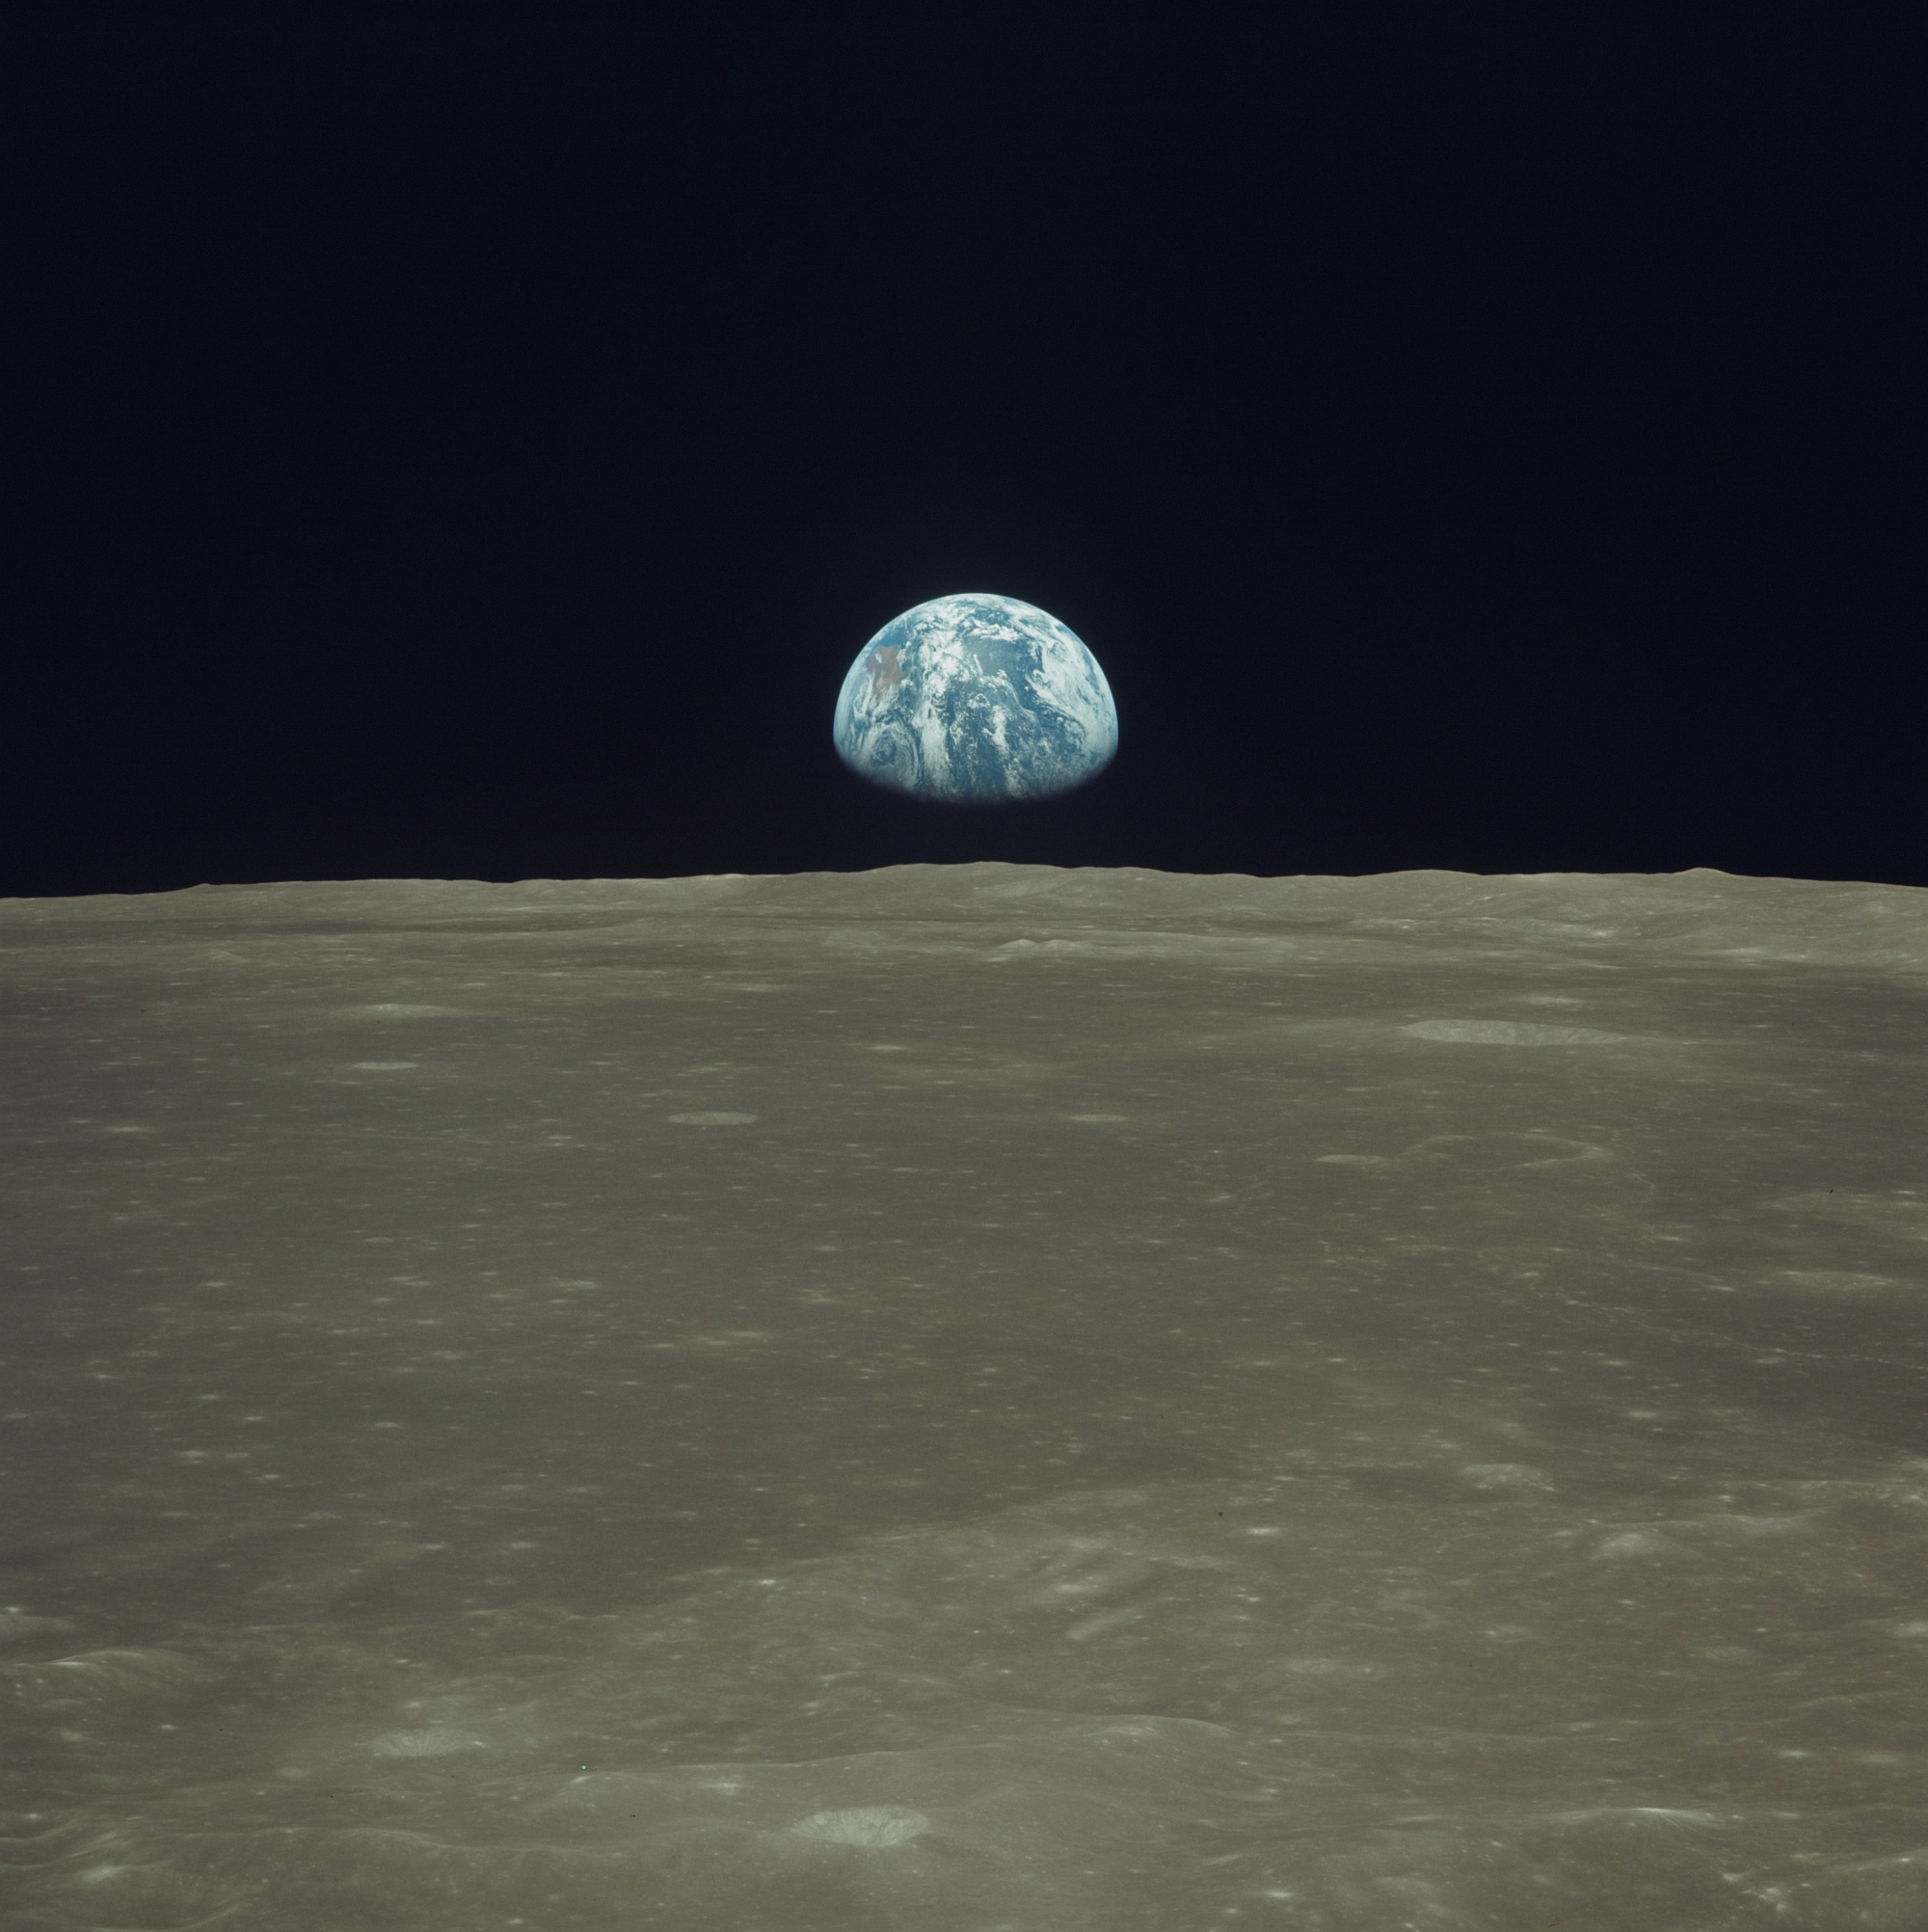 космическое пространство, Луна, Земля, Earthrise - обои на рабочий стол